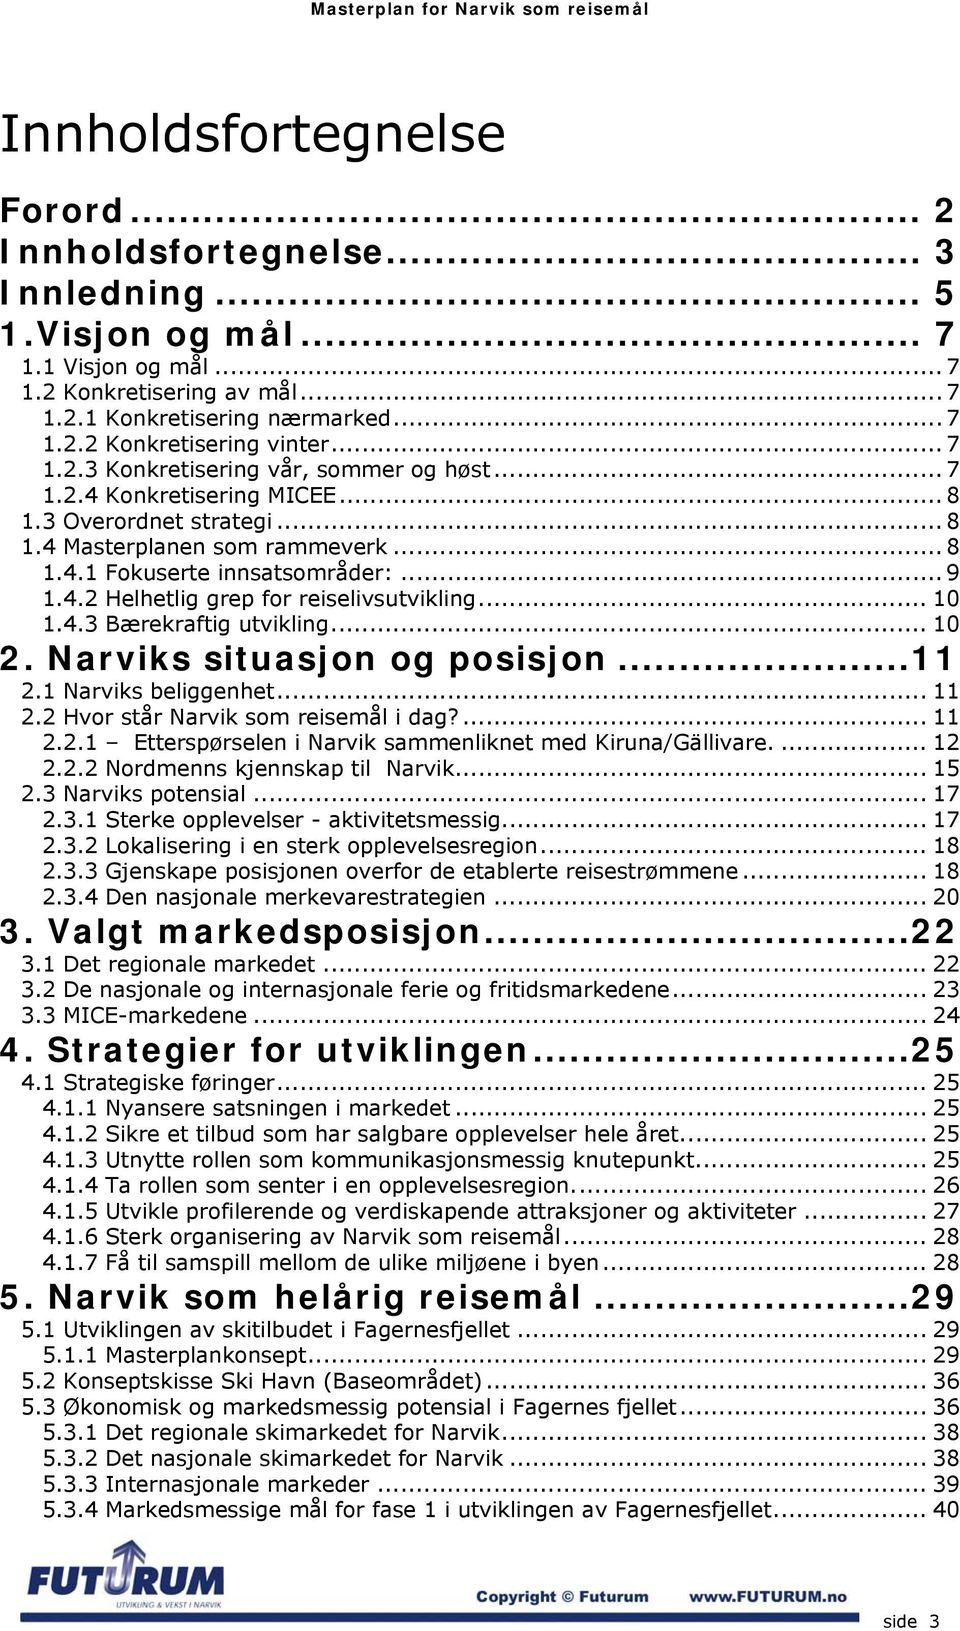 .. 10 1.4.3 Bærekraftig utvikling... 10 2. Narviks situasjon og posisjon...11 2.1 Narviks beliggenhet... 11 2.2 Hvor står Narvik som reisemål i dag?... 11 2.2.1 Etterspørselen i Narvik sammenliknet med Kiruna/Gällivare.